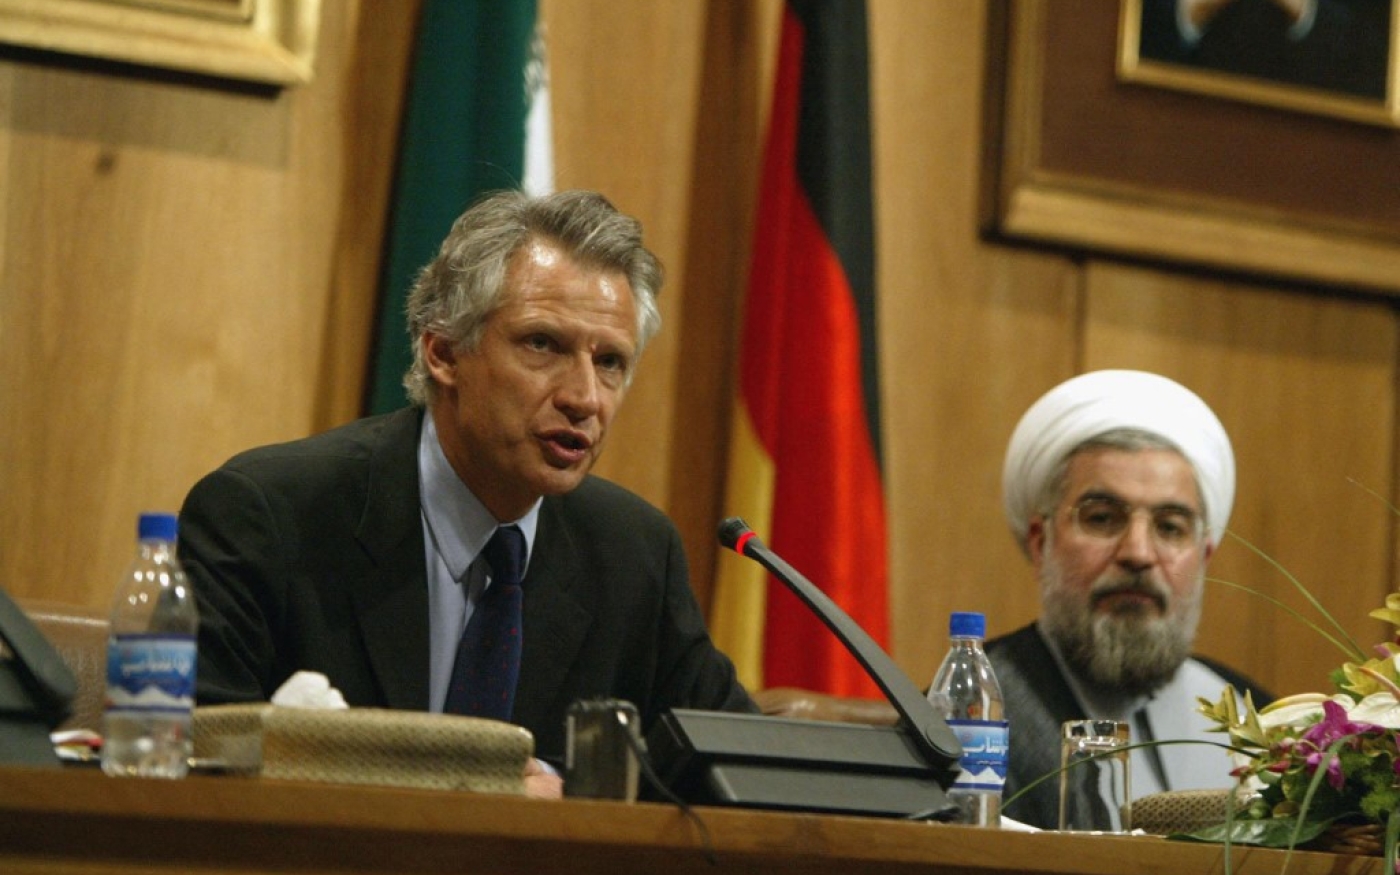 L’Iran promet une « pleine coopération » pour prouver qu’il ne développe plus d’armes nucléaires : Hassan Rohani en conférence de presse avec Dominique de Villepin, le 21 octobre 2003 à Téhéran (AFP)